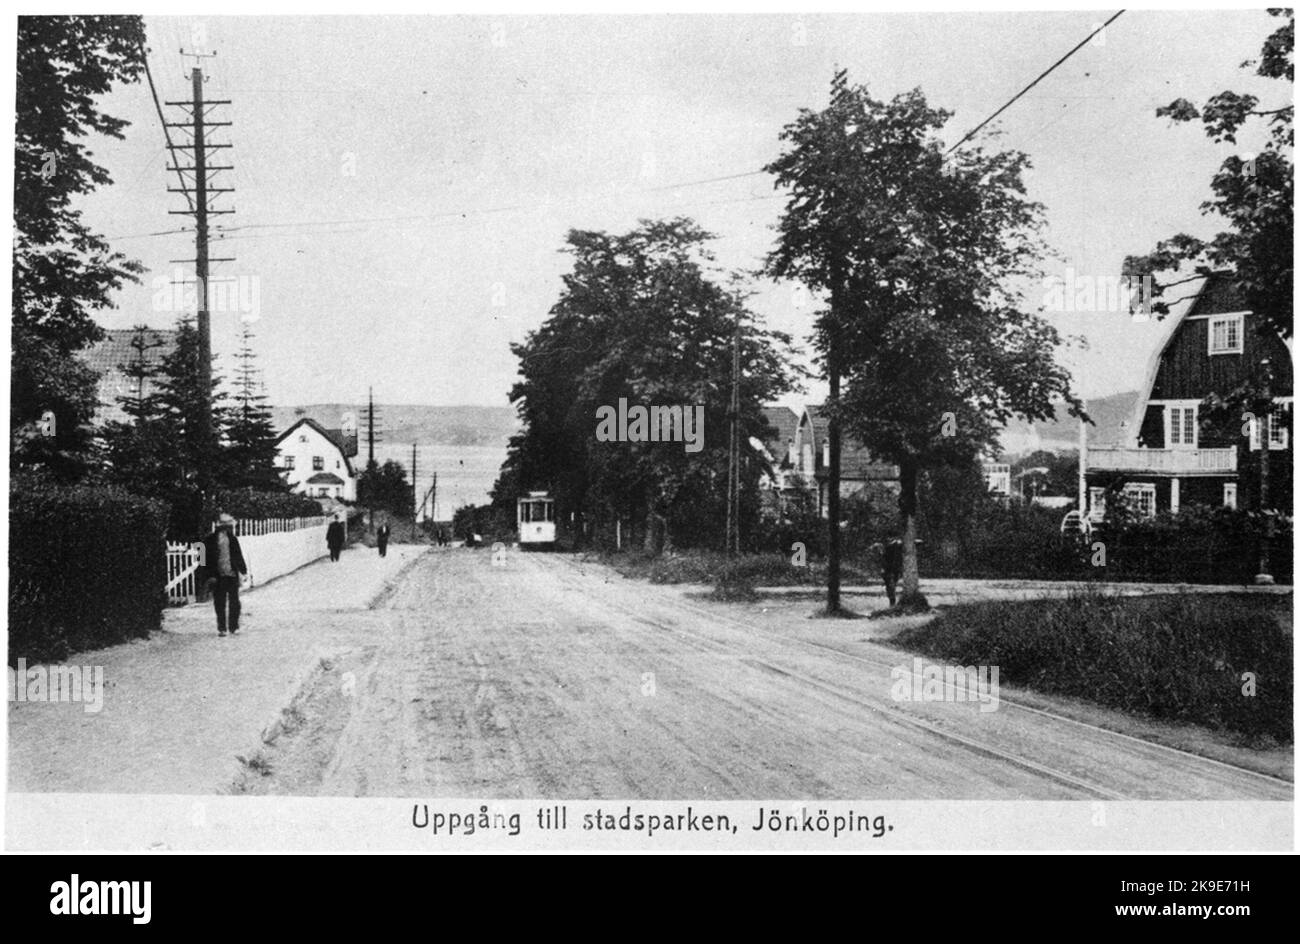 Prenez le tramway jusqu'à Stadsparken à Jönköping. Banque D'Images